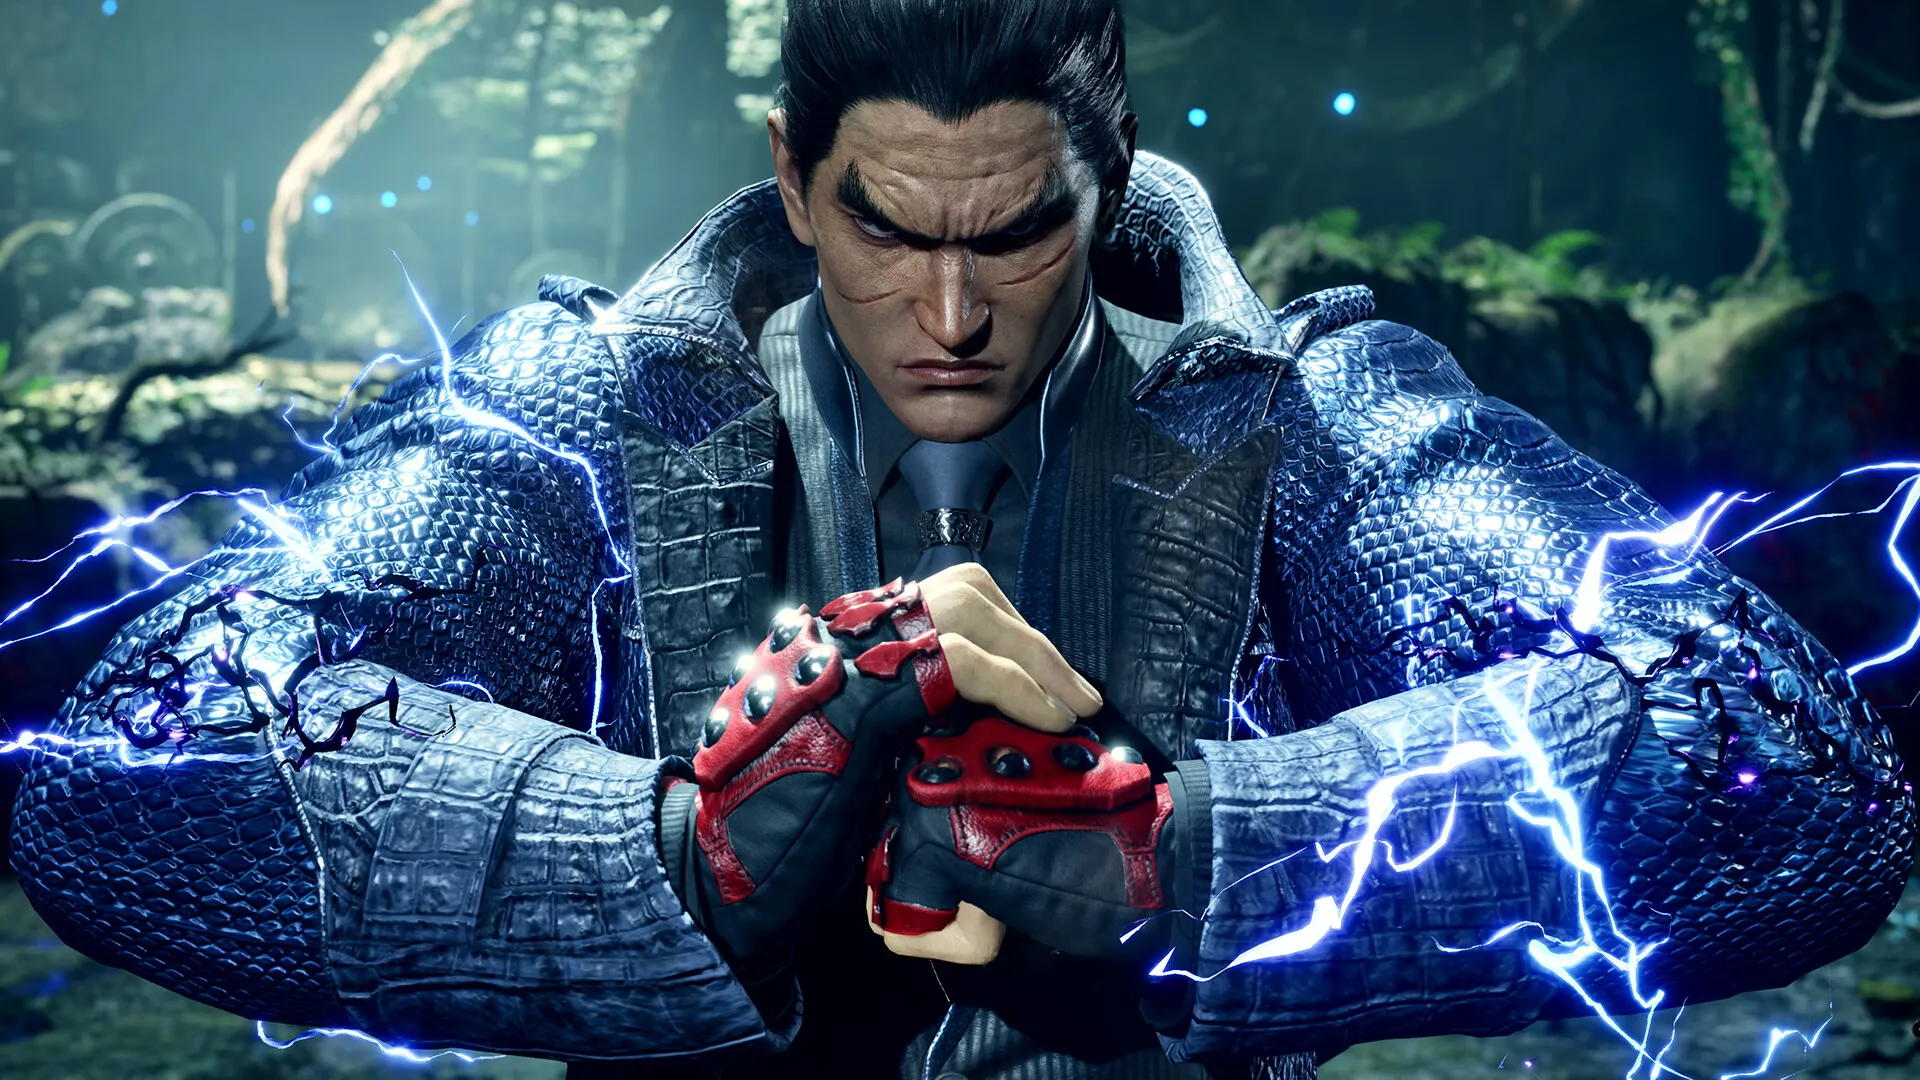 Tekken 8: data de lançamento oficial anunciada com um novo trailer